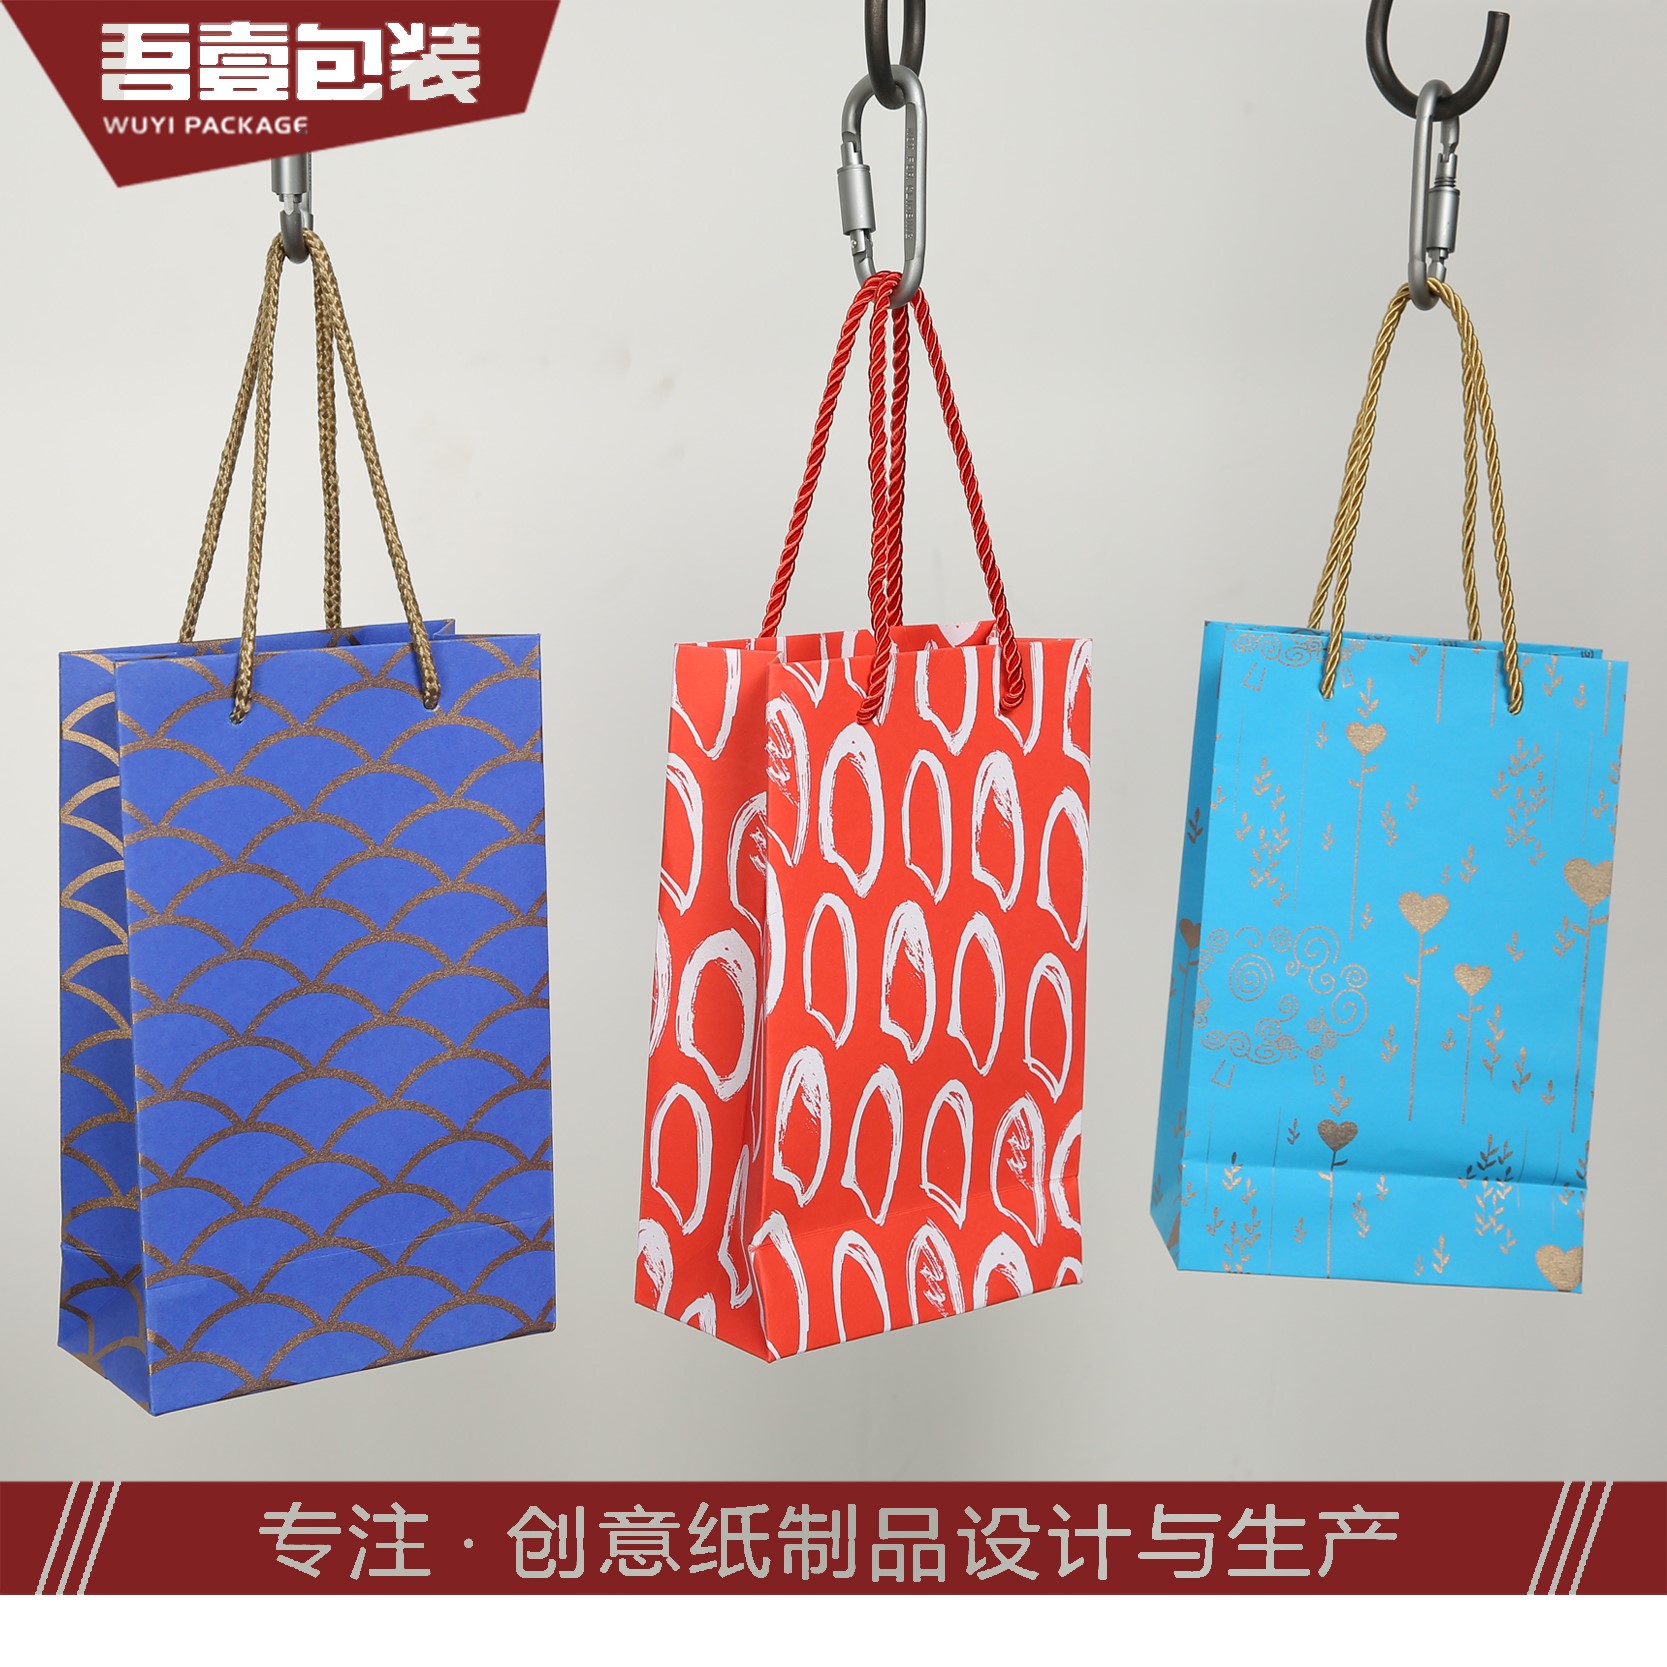 苏州吾壹包装彩印有限公司将参加GPPE上海礼品包装展